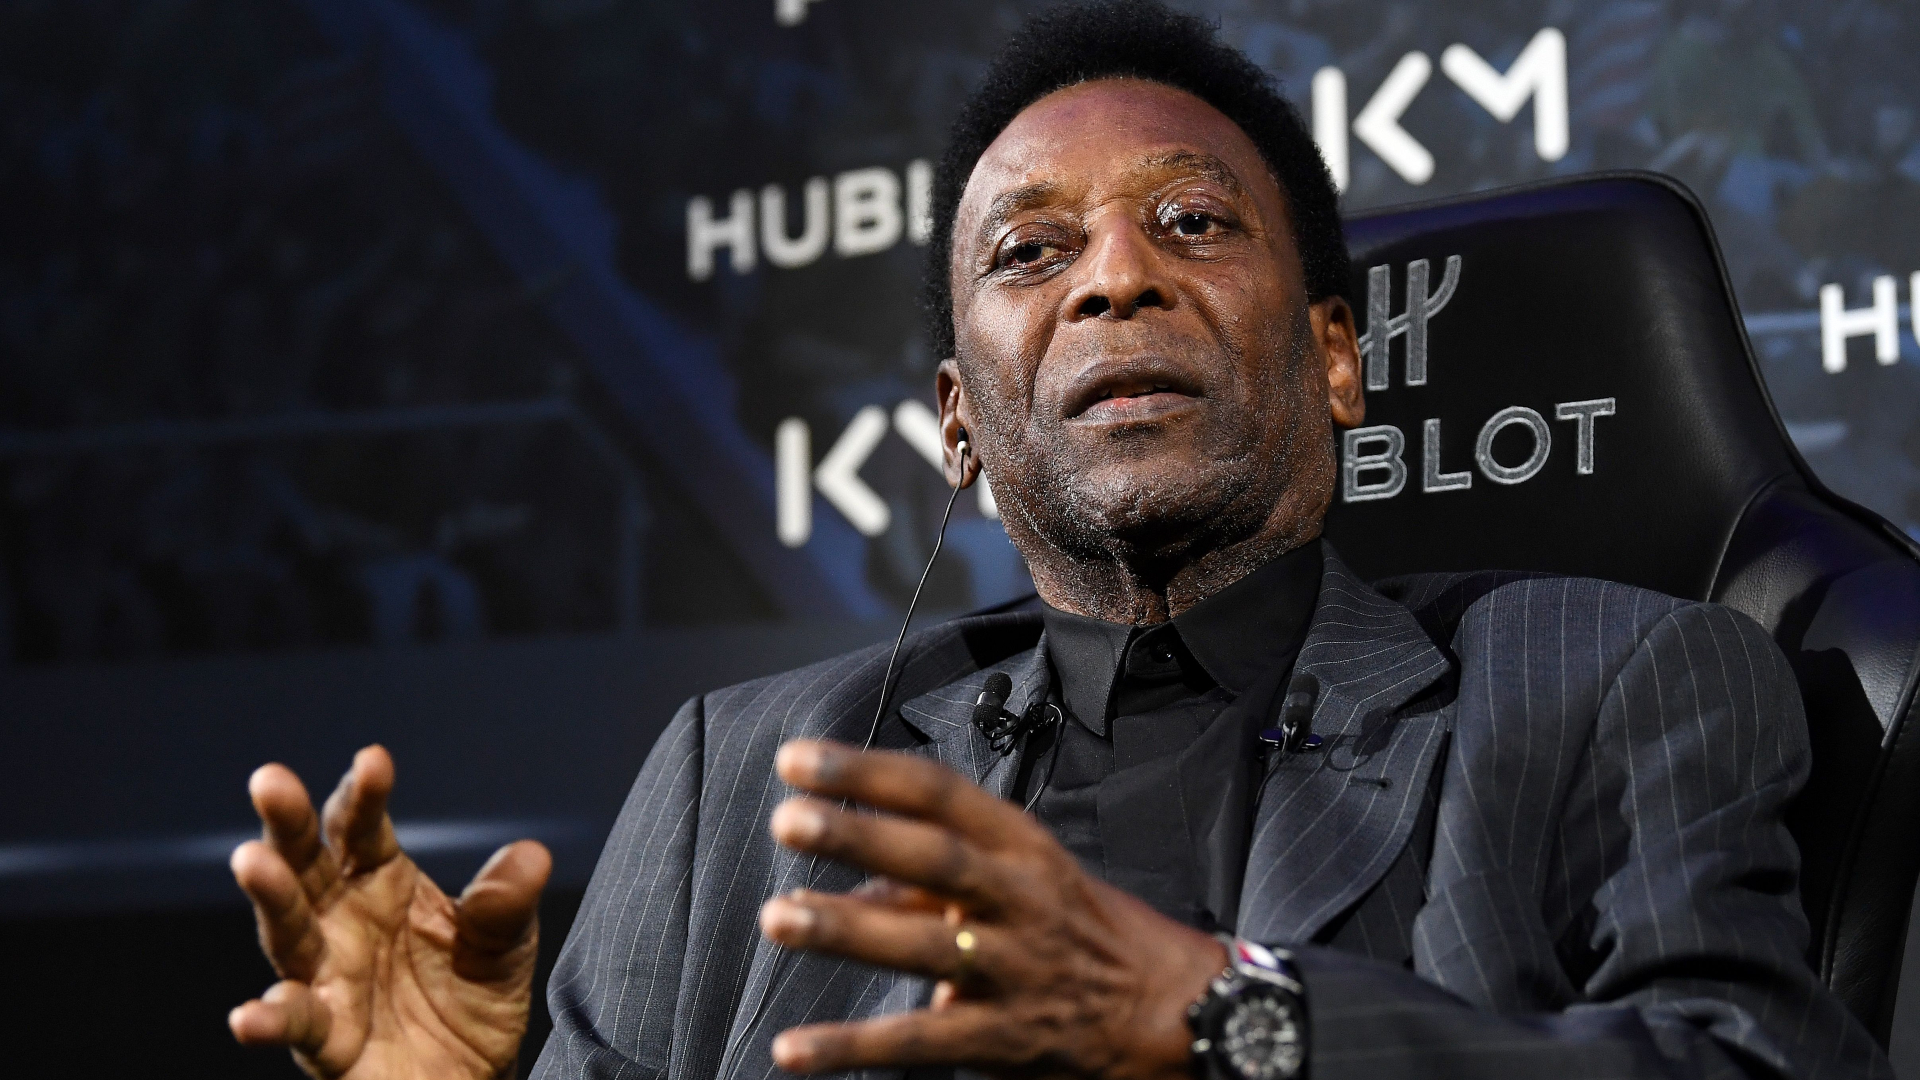 La hija de Pelé transmite un nuevo mensaje: "Una noche más junto a él"